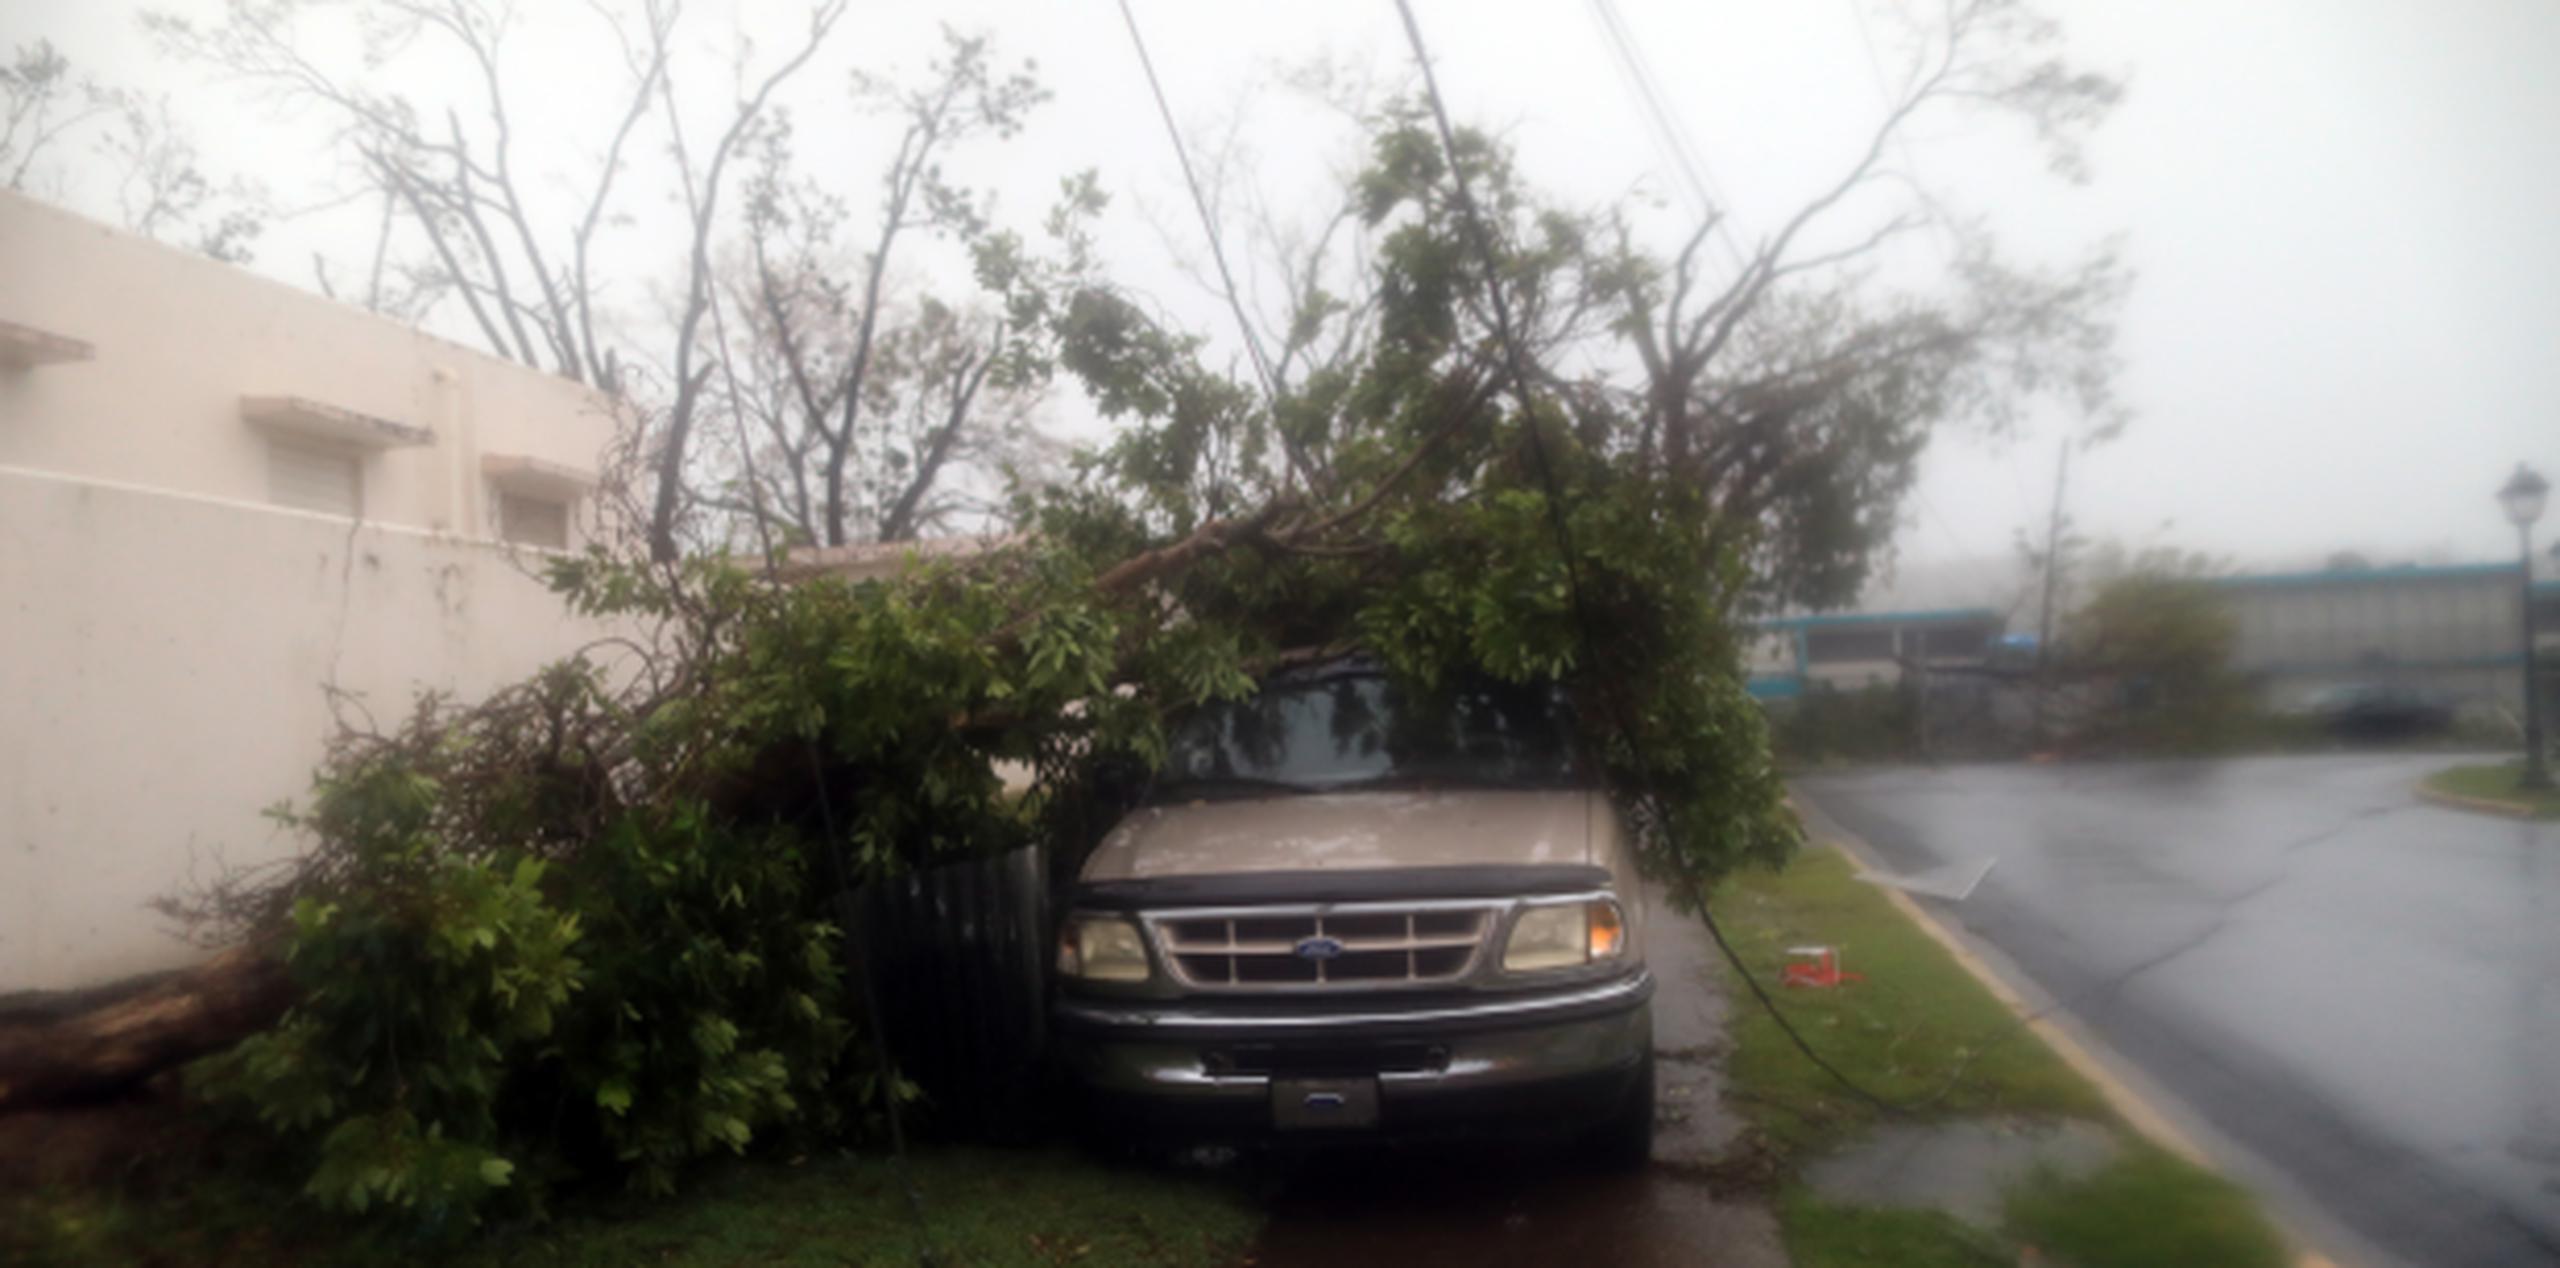 Un árbol cayó sobre un vehículo en la primera etapa del paso del huracán María. (xavier.araujo@gfrmedia.com)